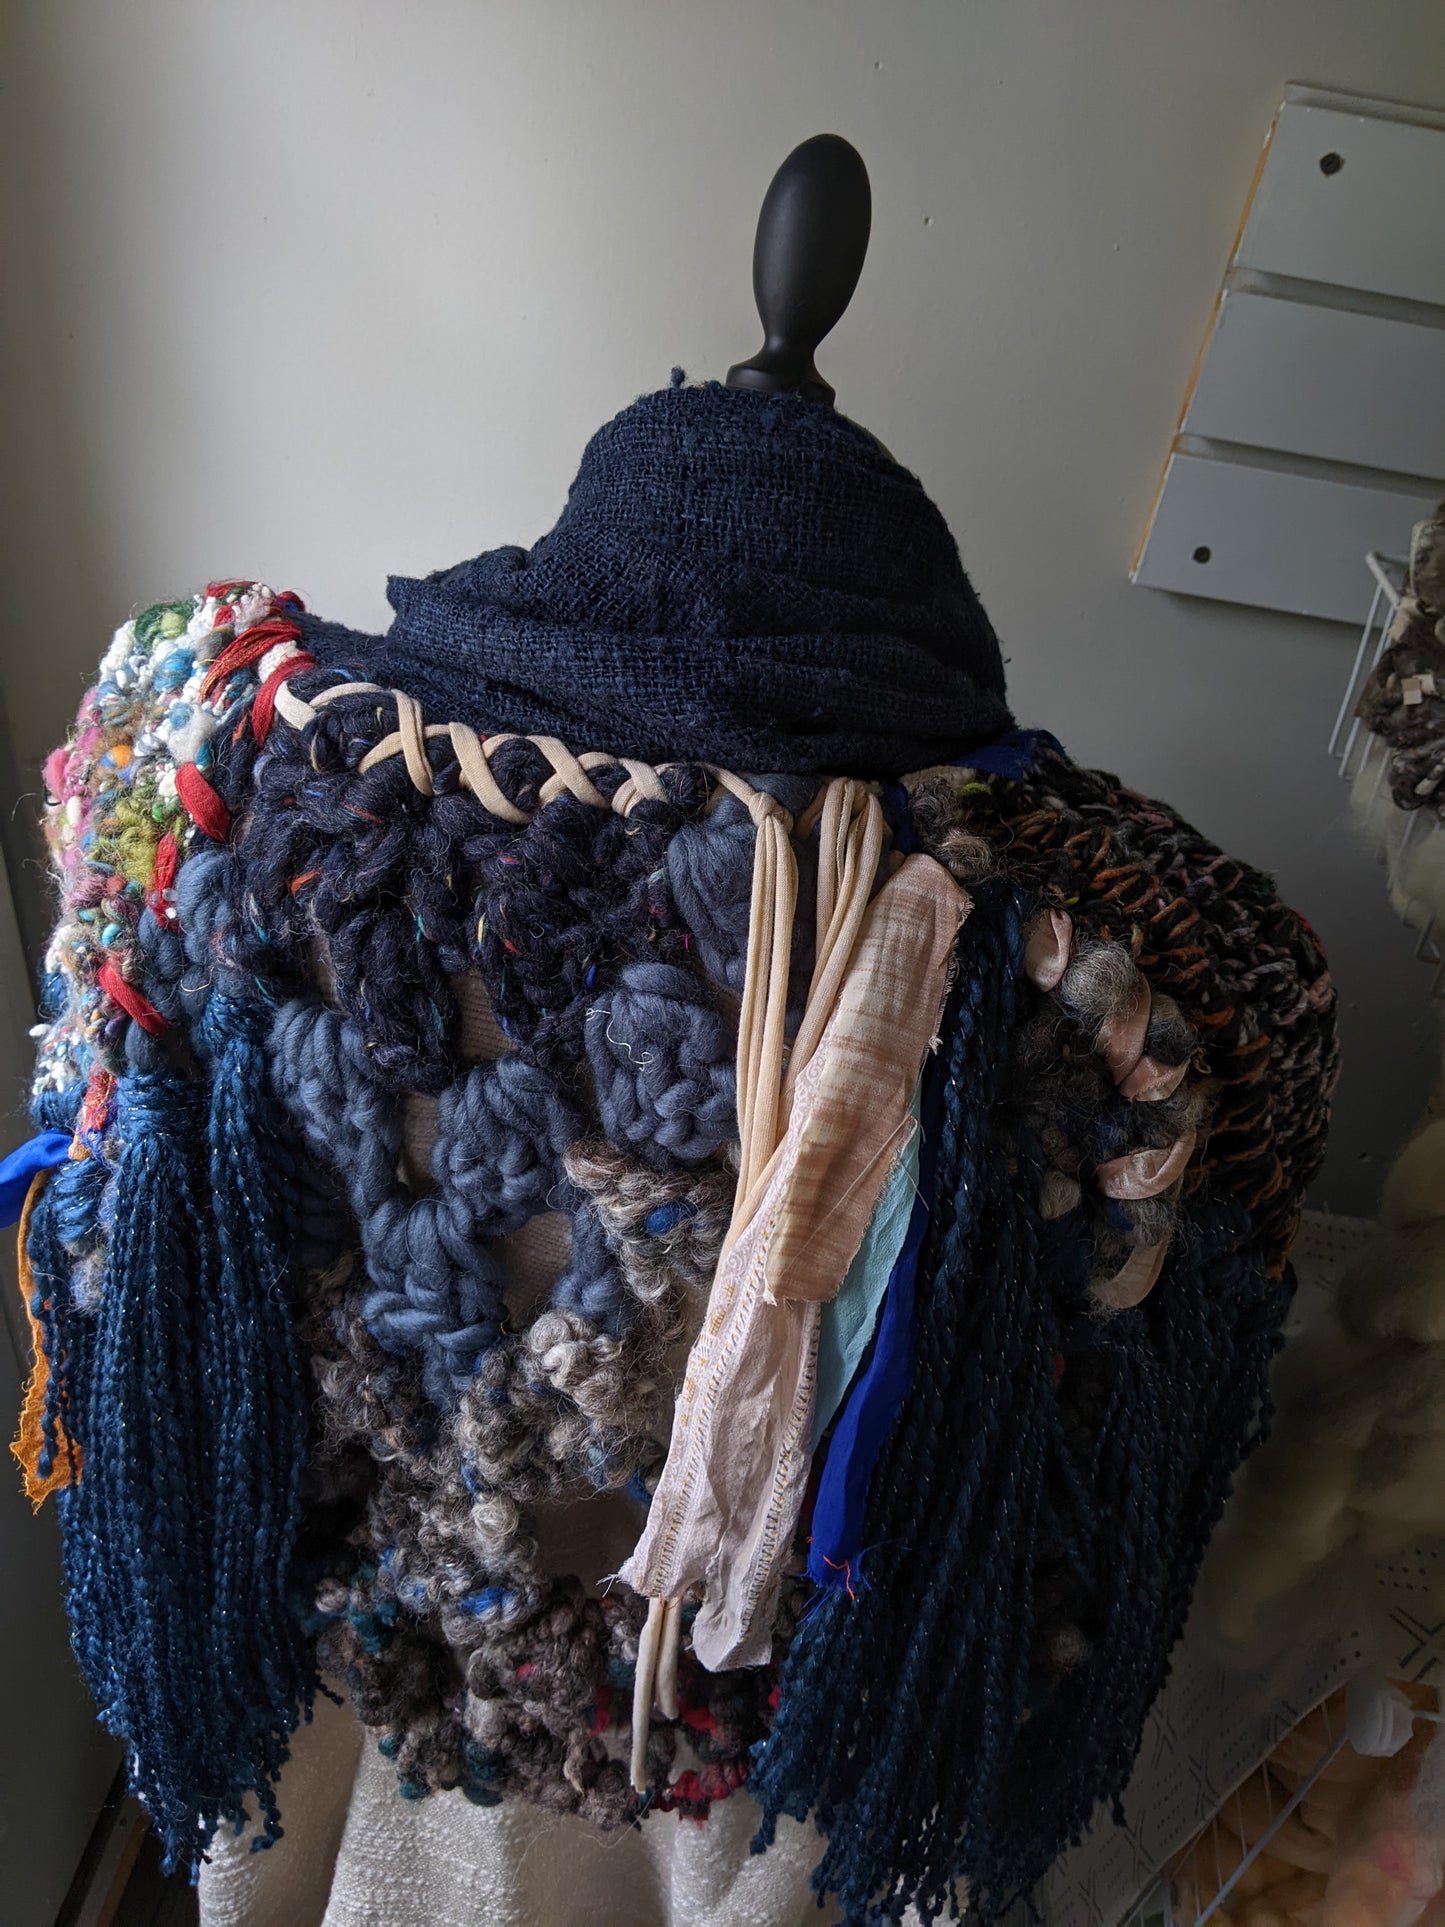 Fiber Festival Freeform Crochet, Knit Handspun, and Woven Boho Shredded Wings Wrap